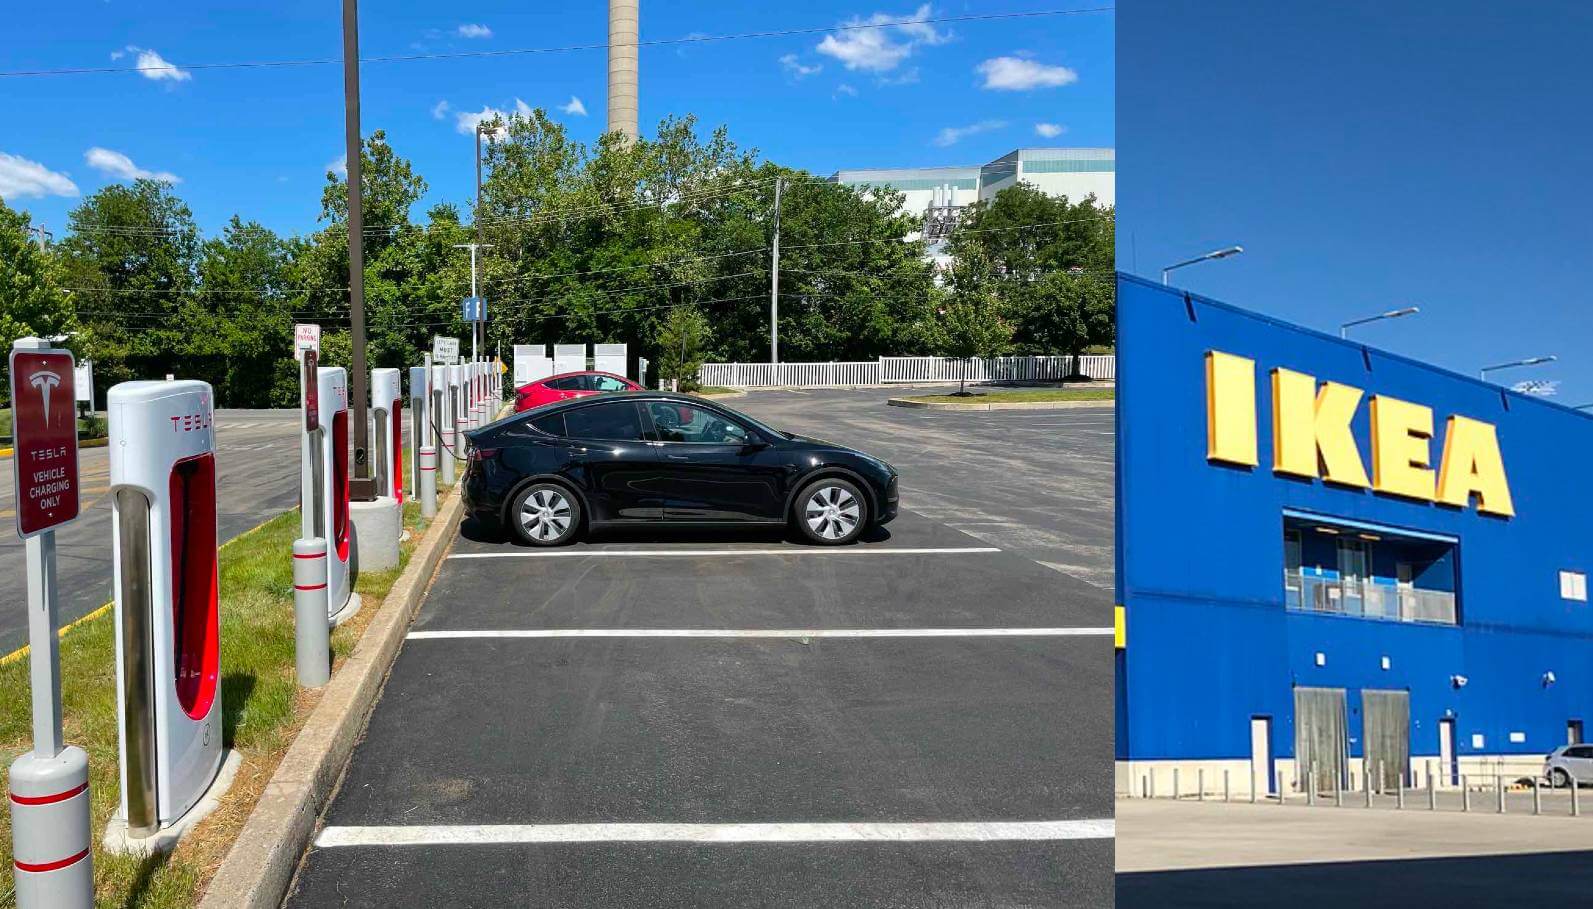 La stazione Tesla Supercharger entra in funzione all’IKEA in PA